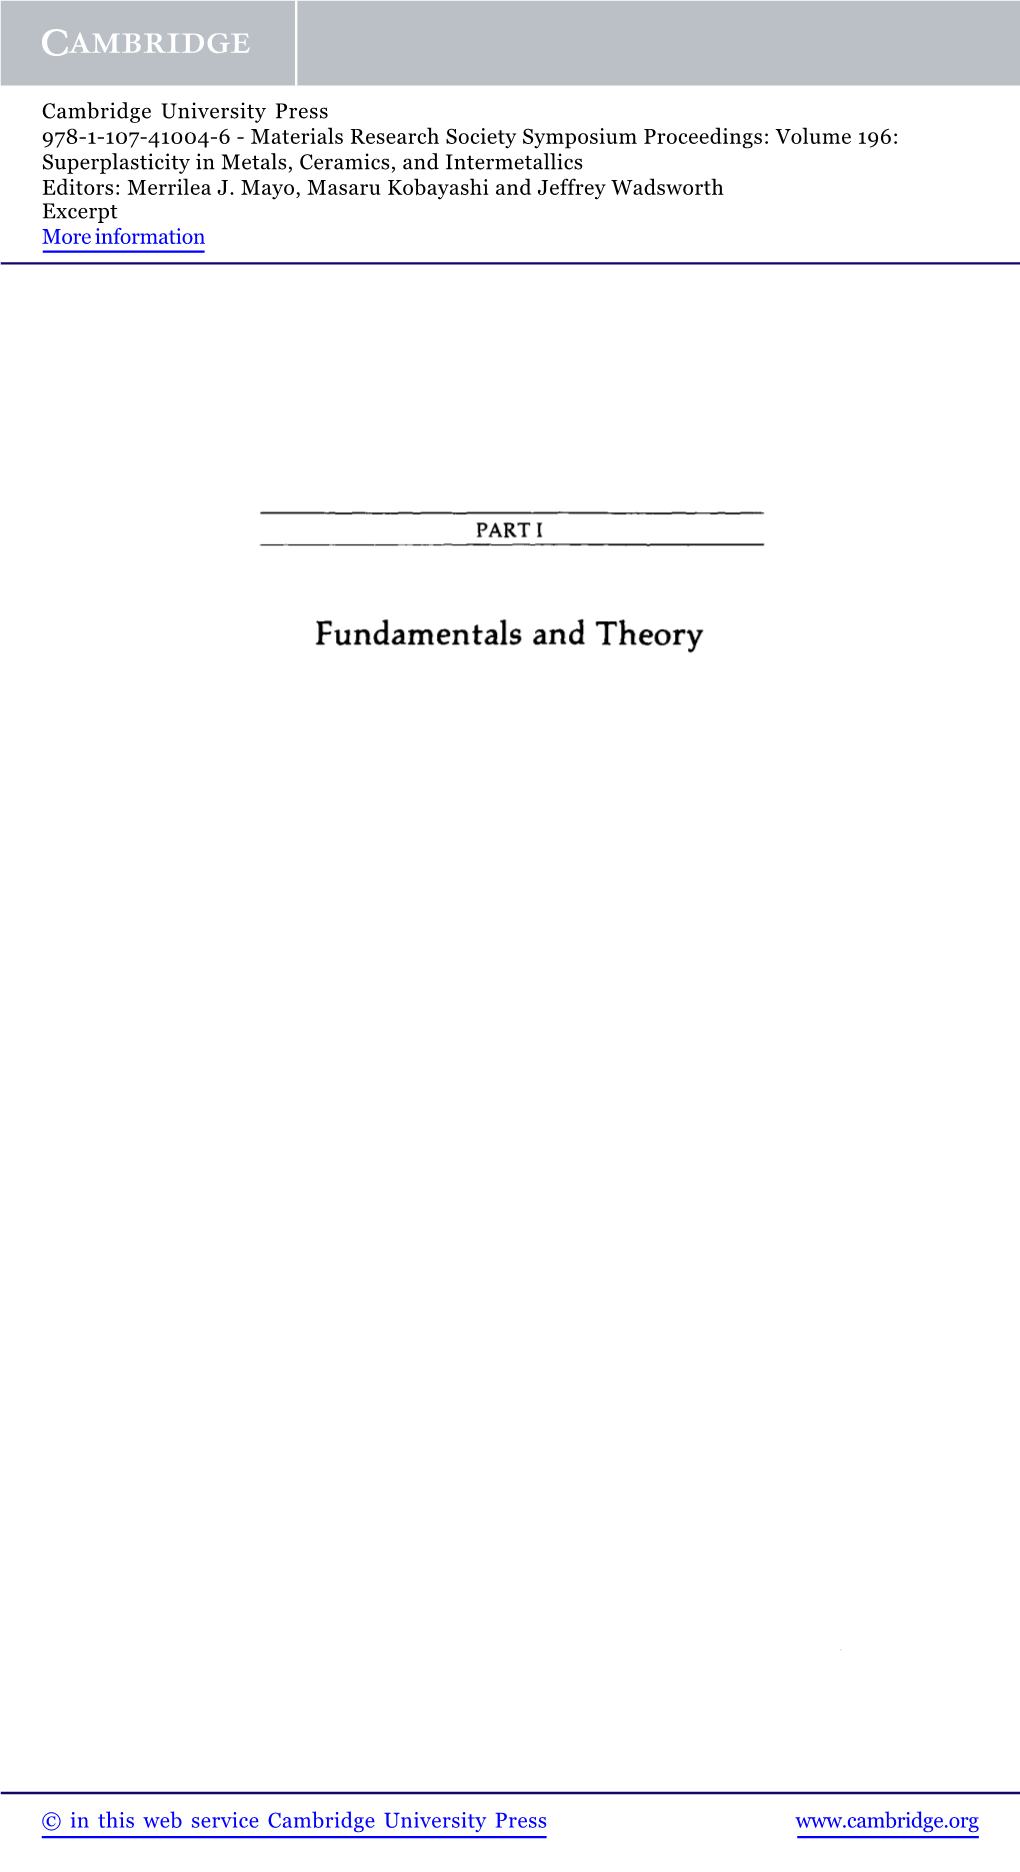 Fundamentals and Theory